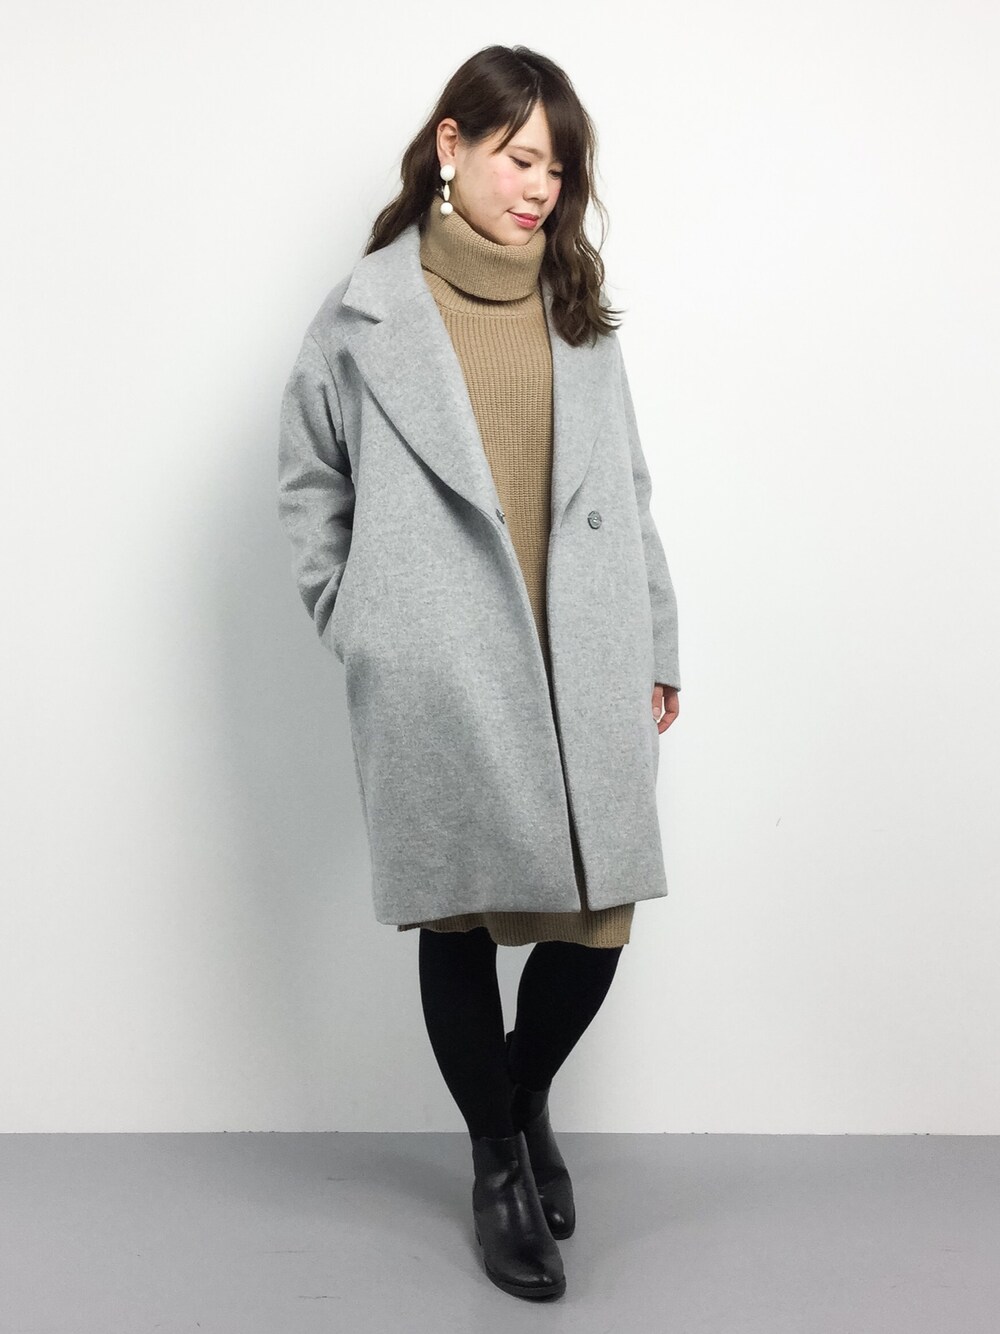 店員natsumi│Spick & Span的西裝大衣搭配- WEAR